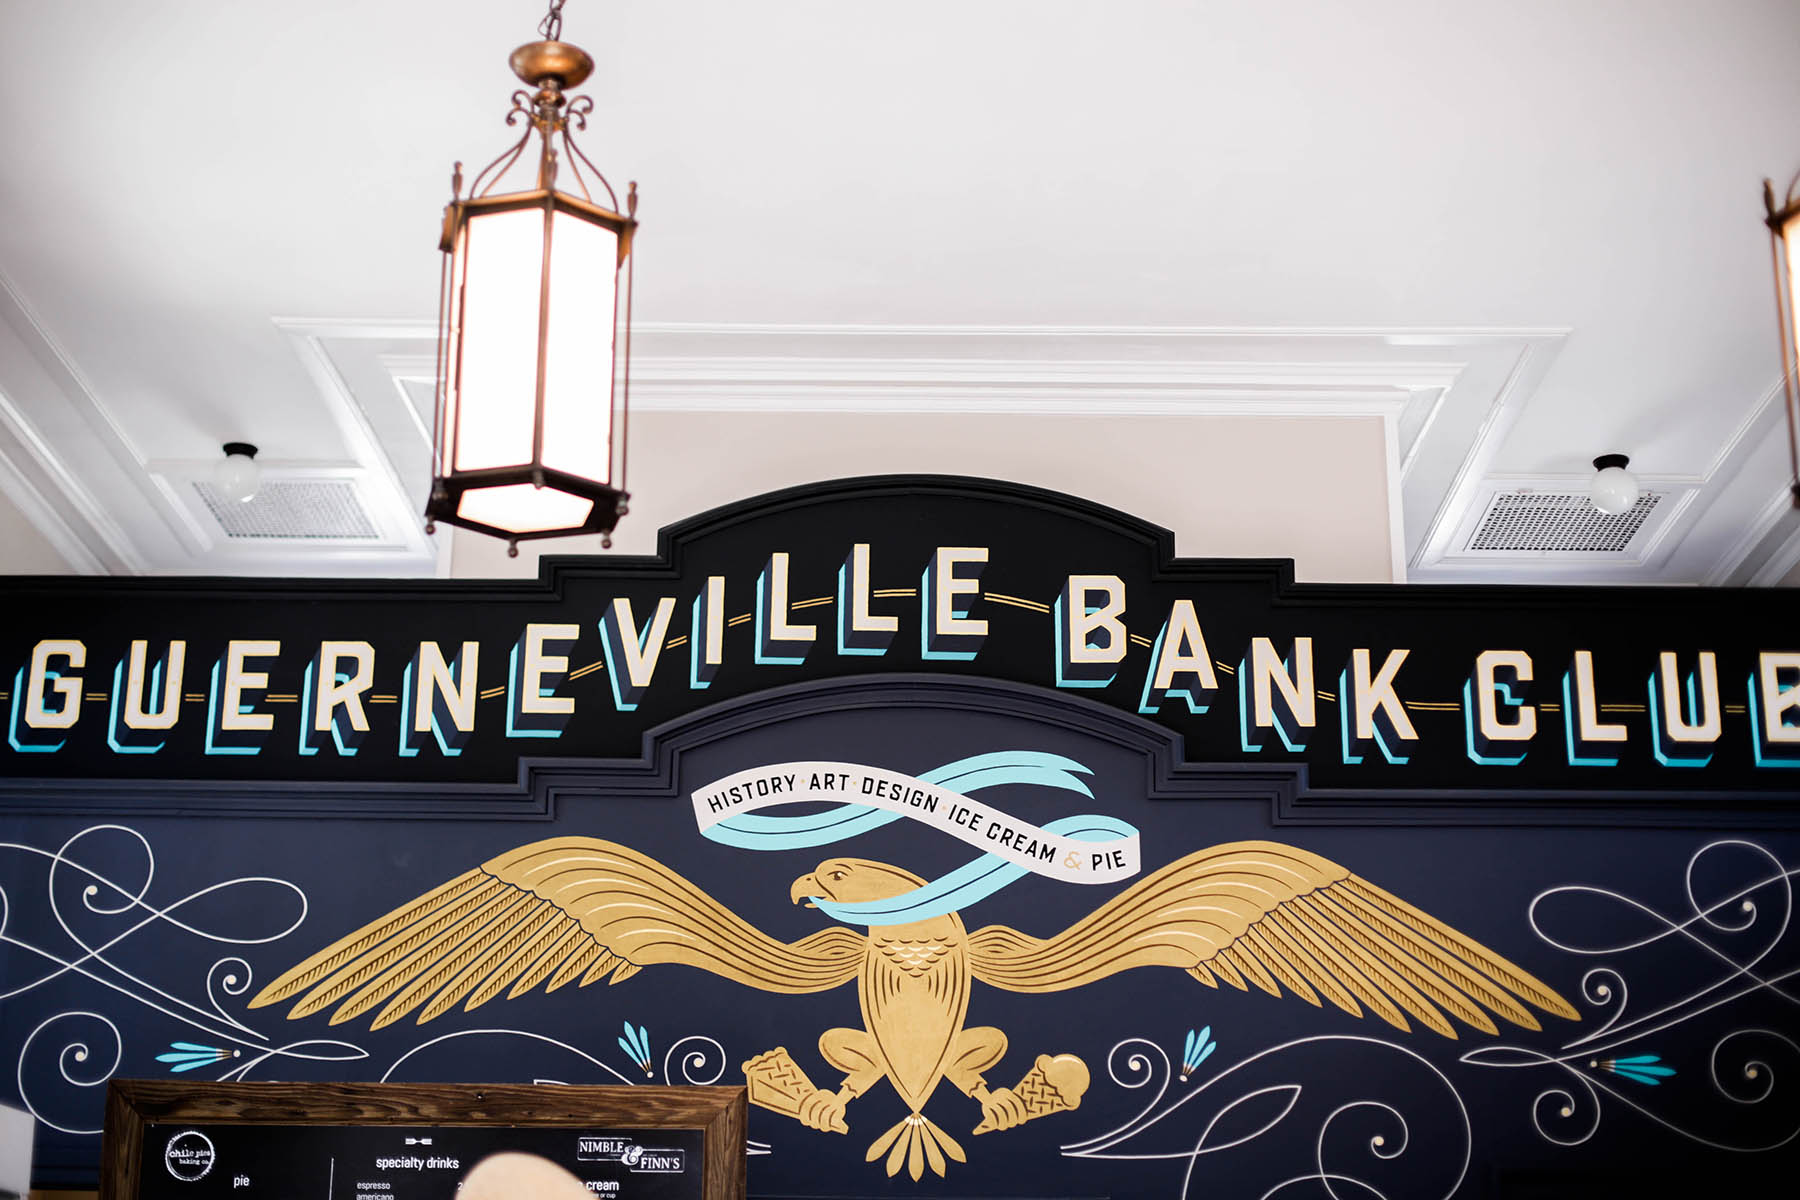 Guerneville Bank Club, California